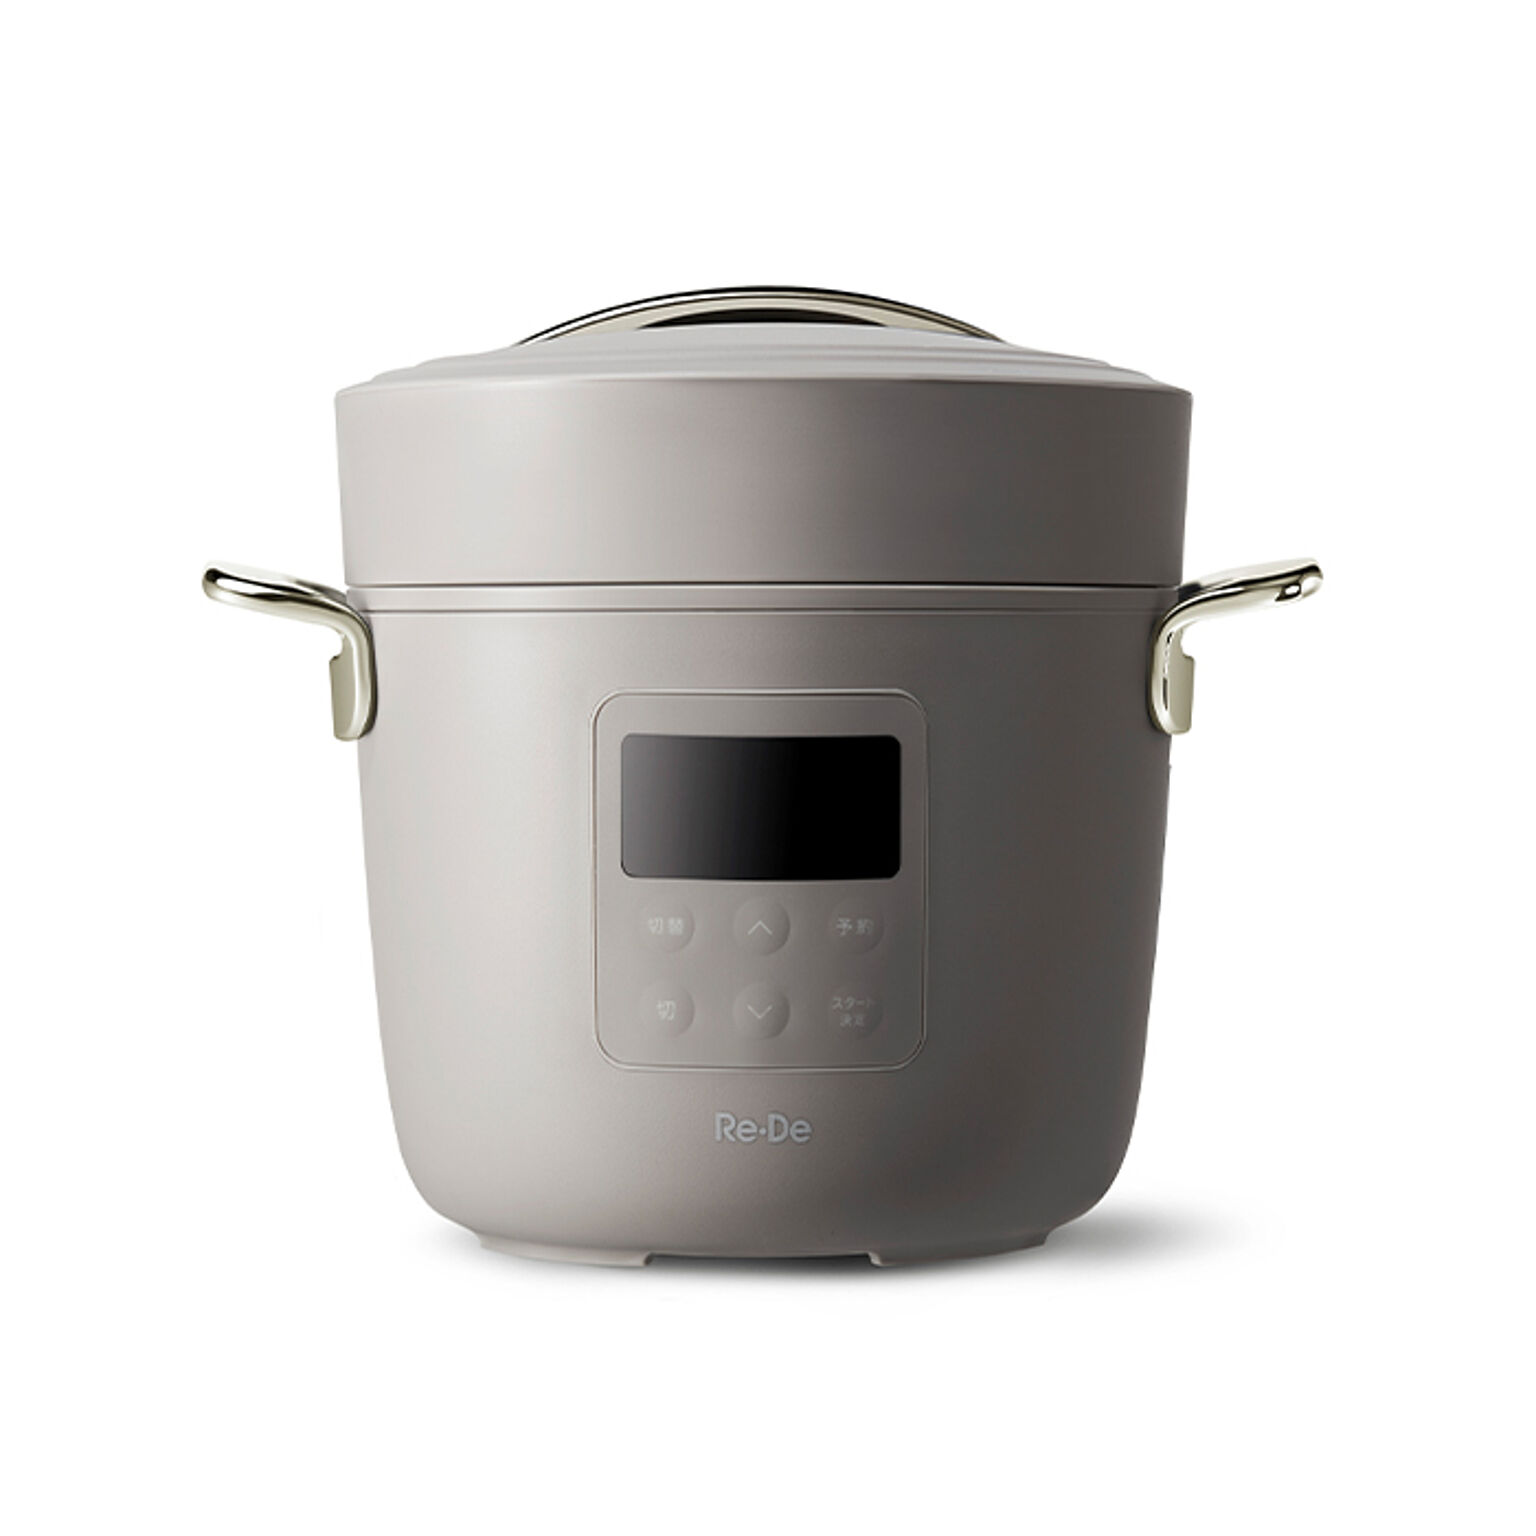 re・de pot 電気圧力鍋 リデポット 圧力鍋 PCH-20L 電気 圧力なべ 2L 炊飯器 4合 圧力調理 低温調理 無水調理鍋 無水調理レシピ 密